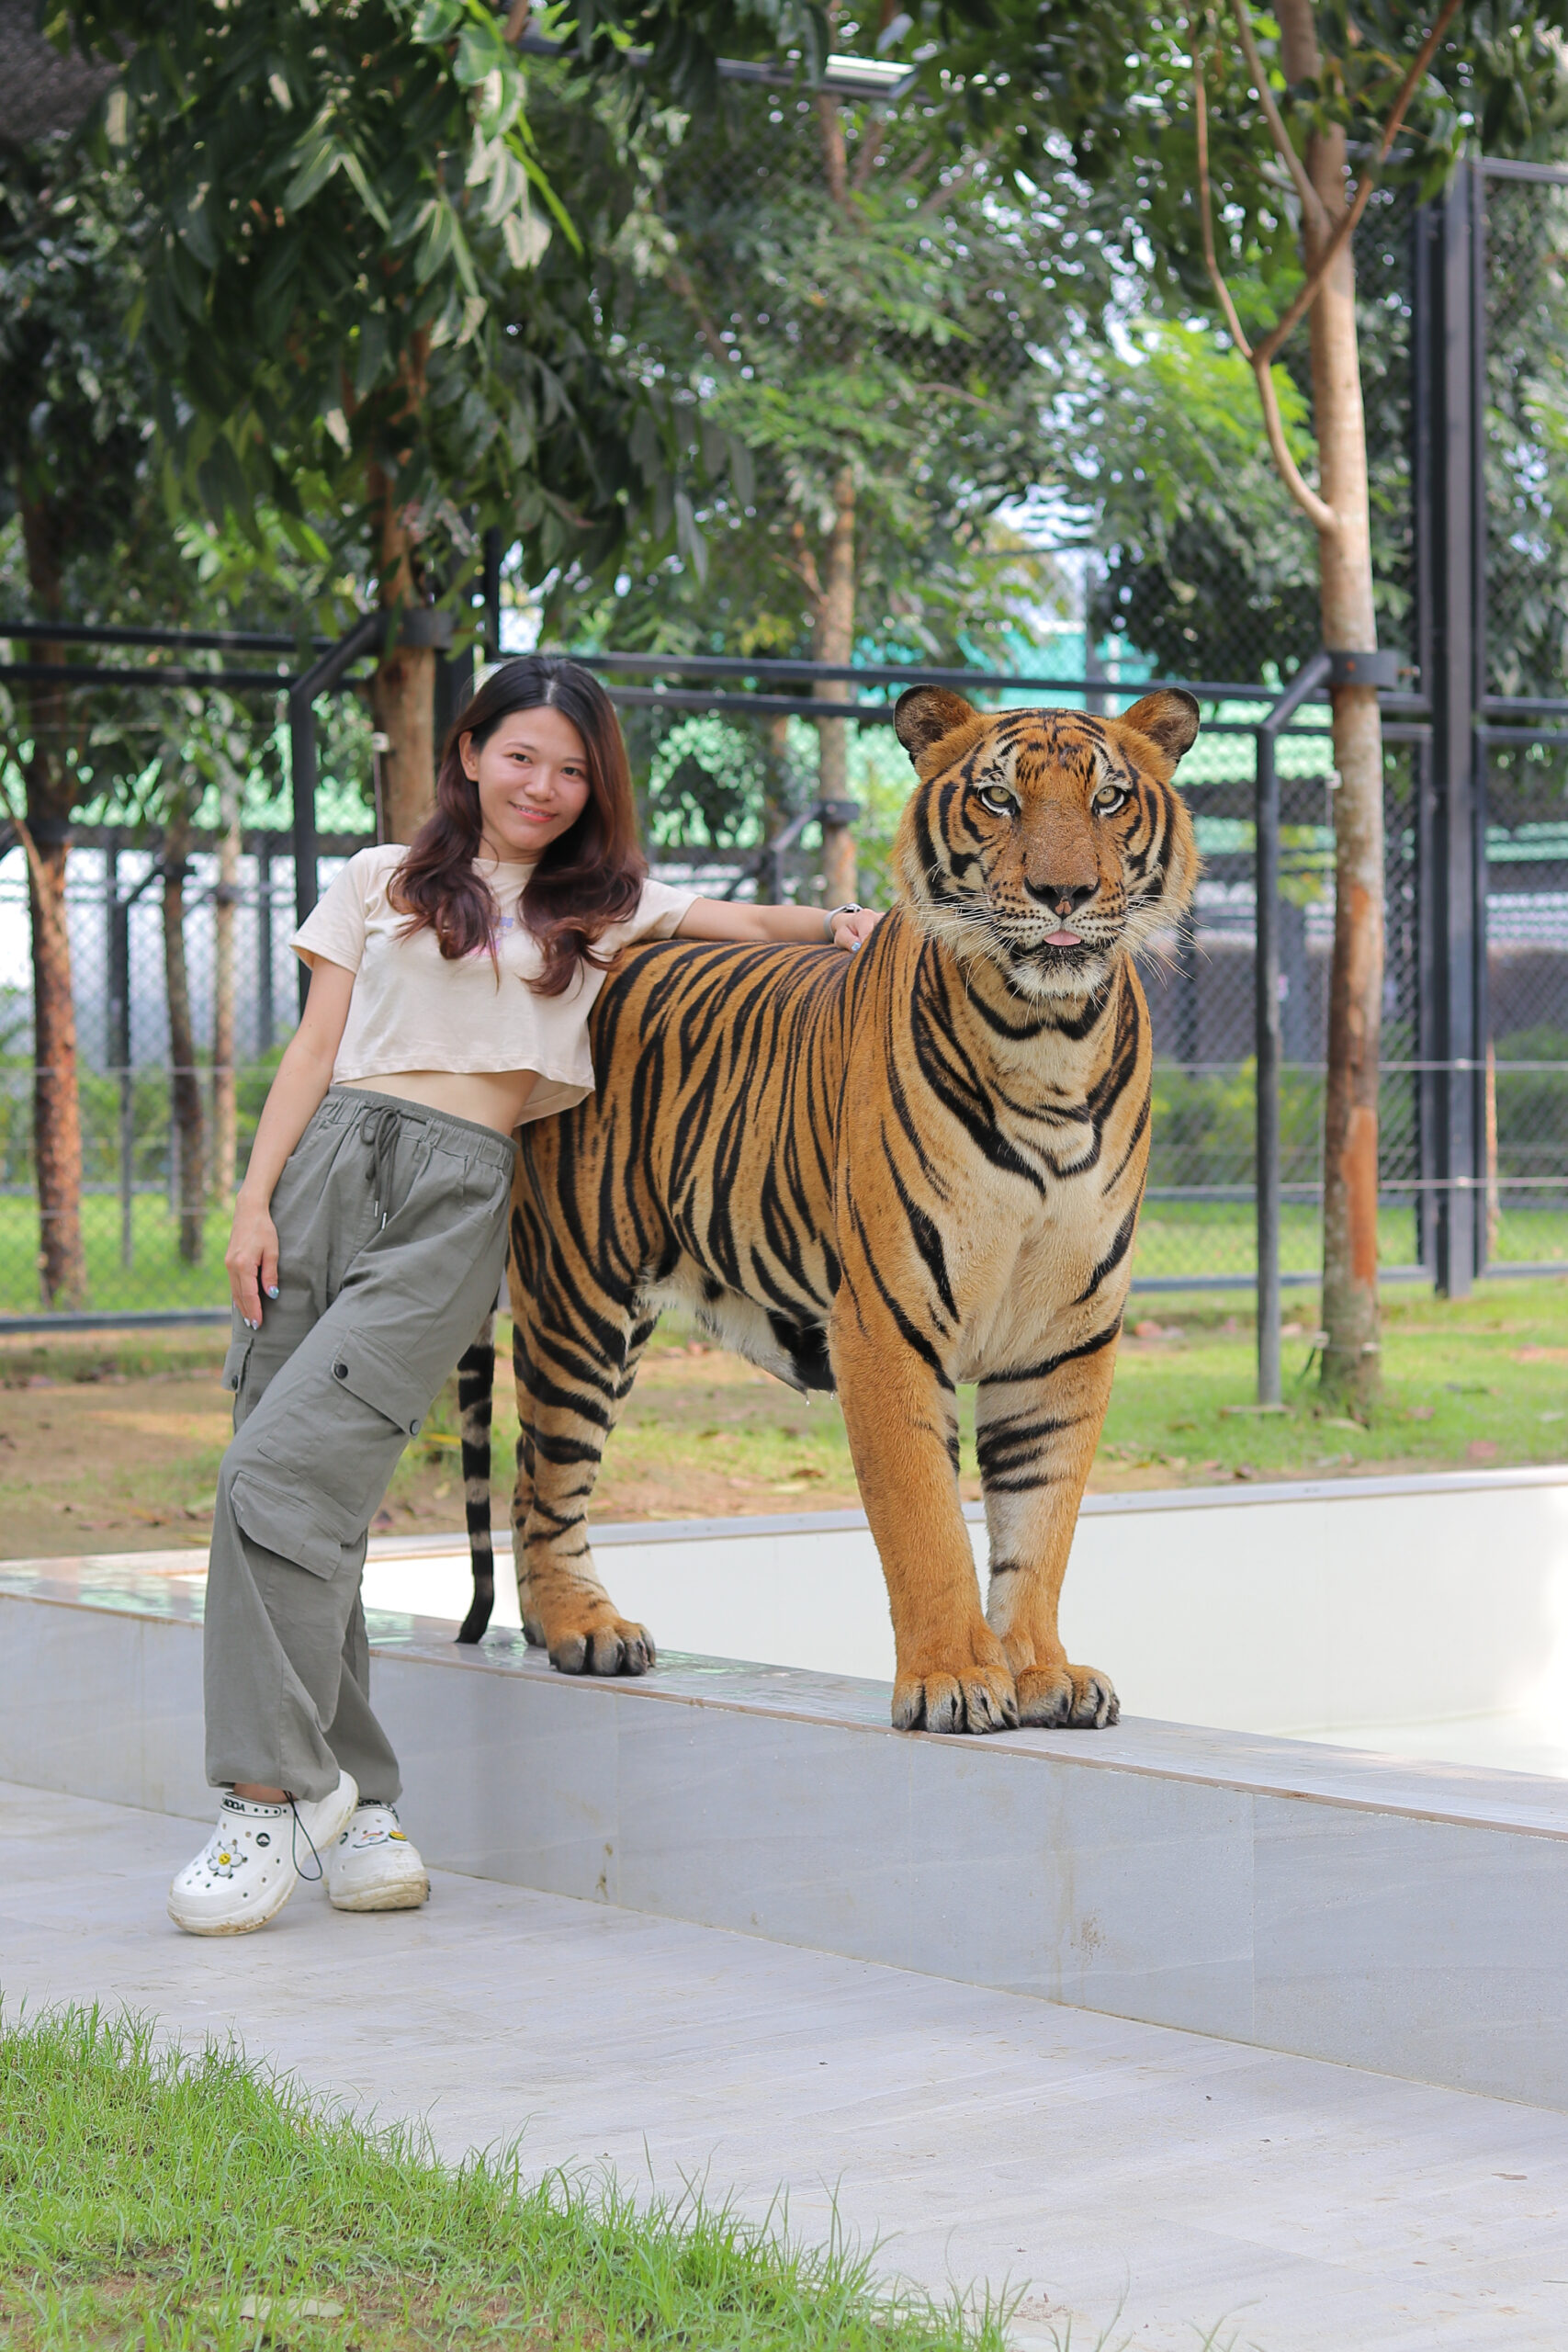 Tiger world Thialand 泰國曼谷丹嫩莎朵老虎園